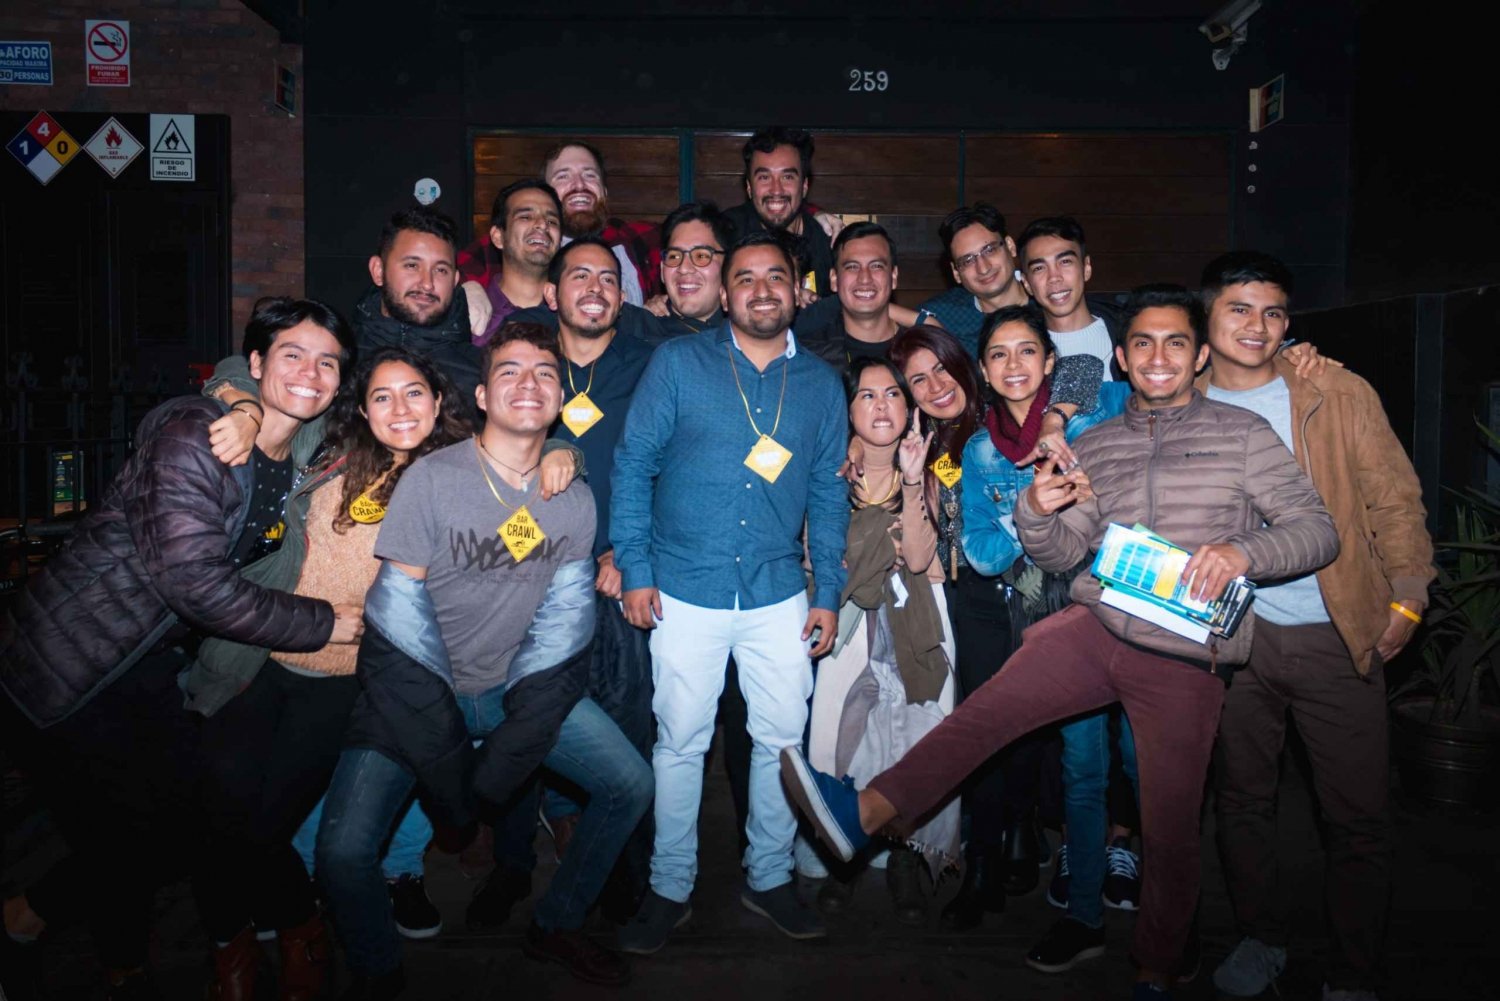 Lima: Partytur i Miraflores med barrunde og drinker